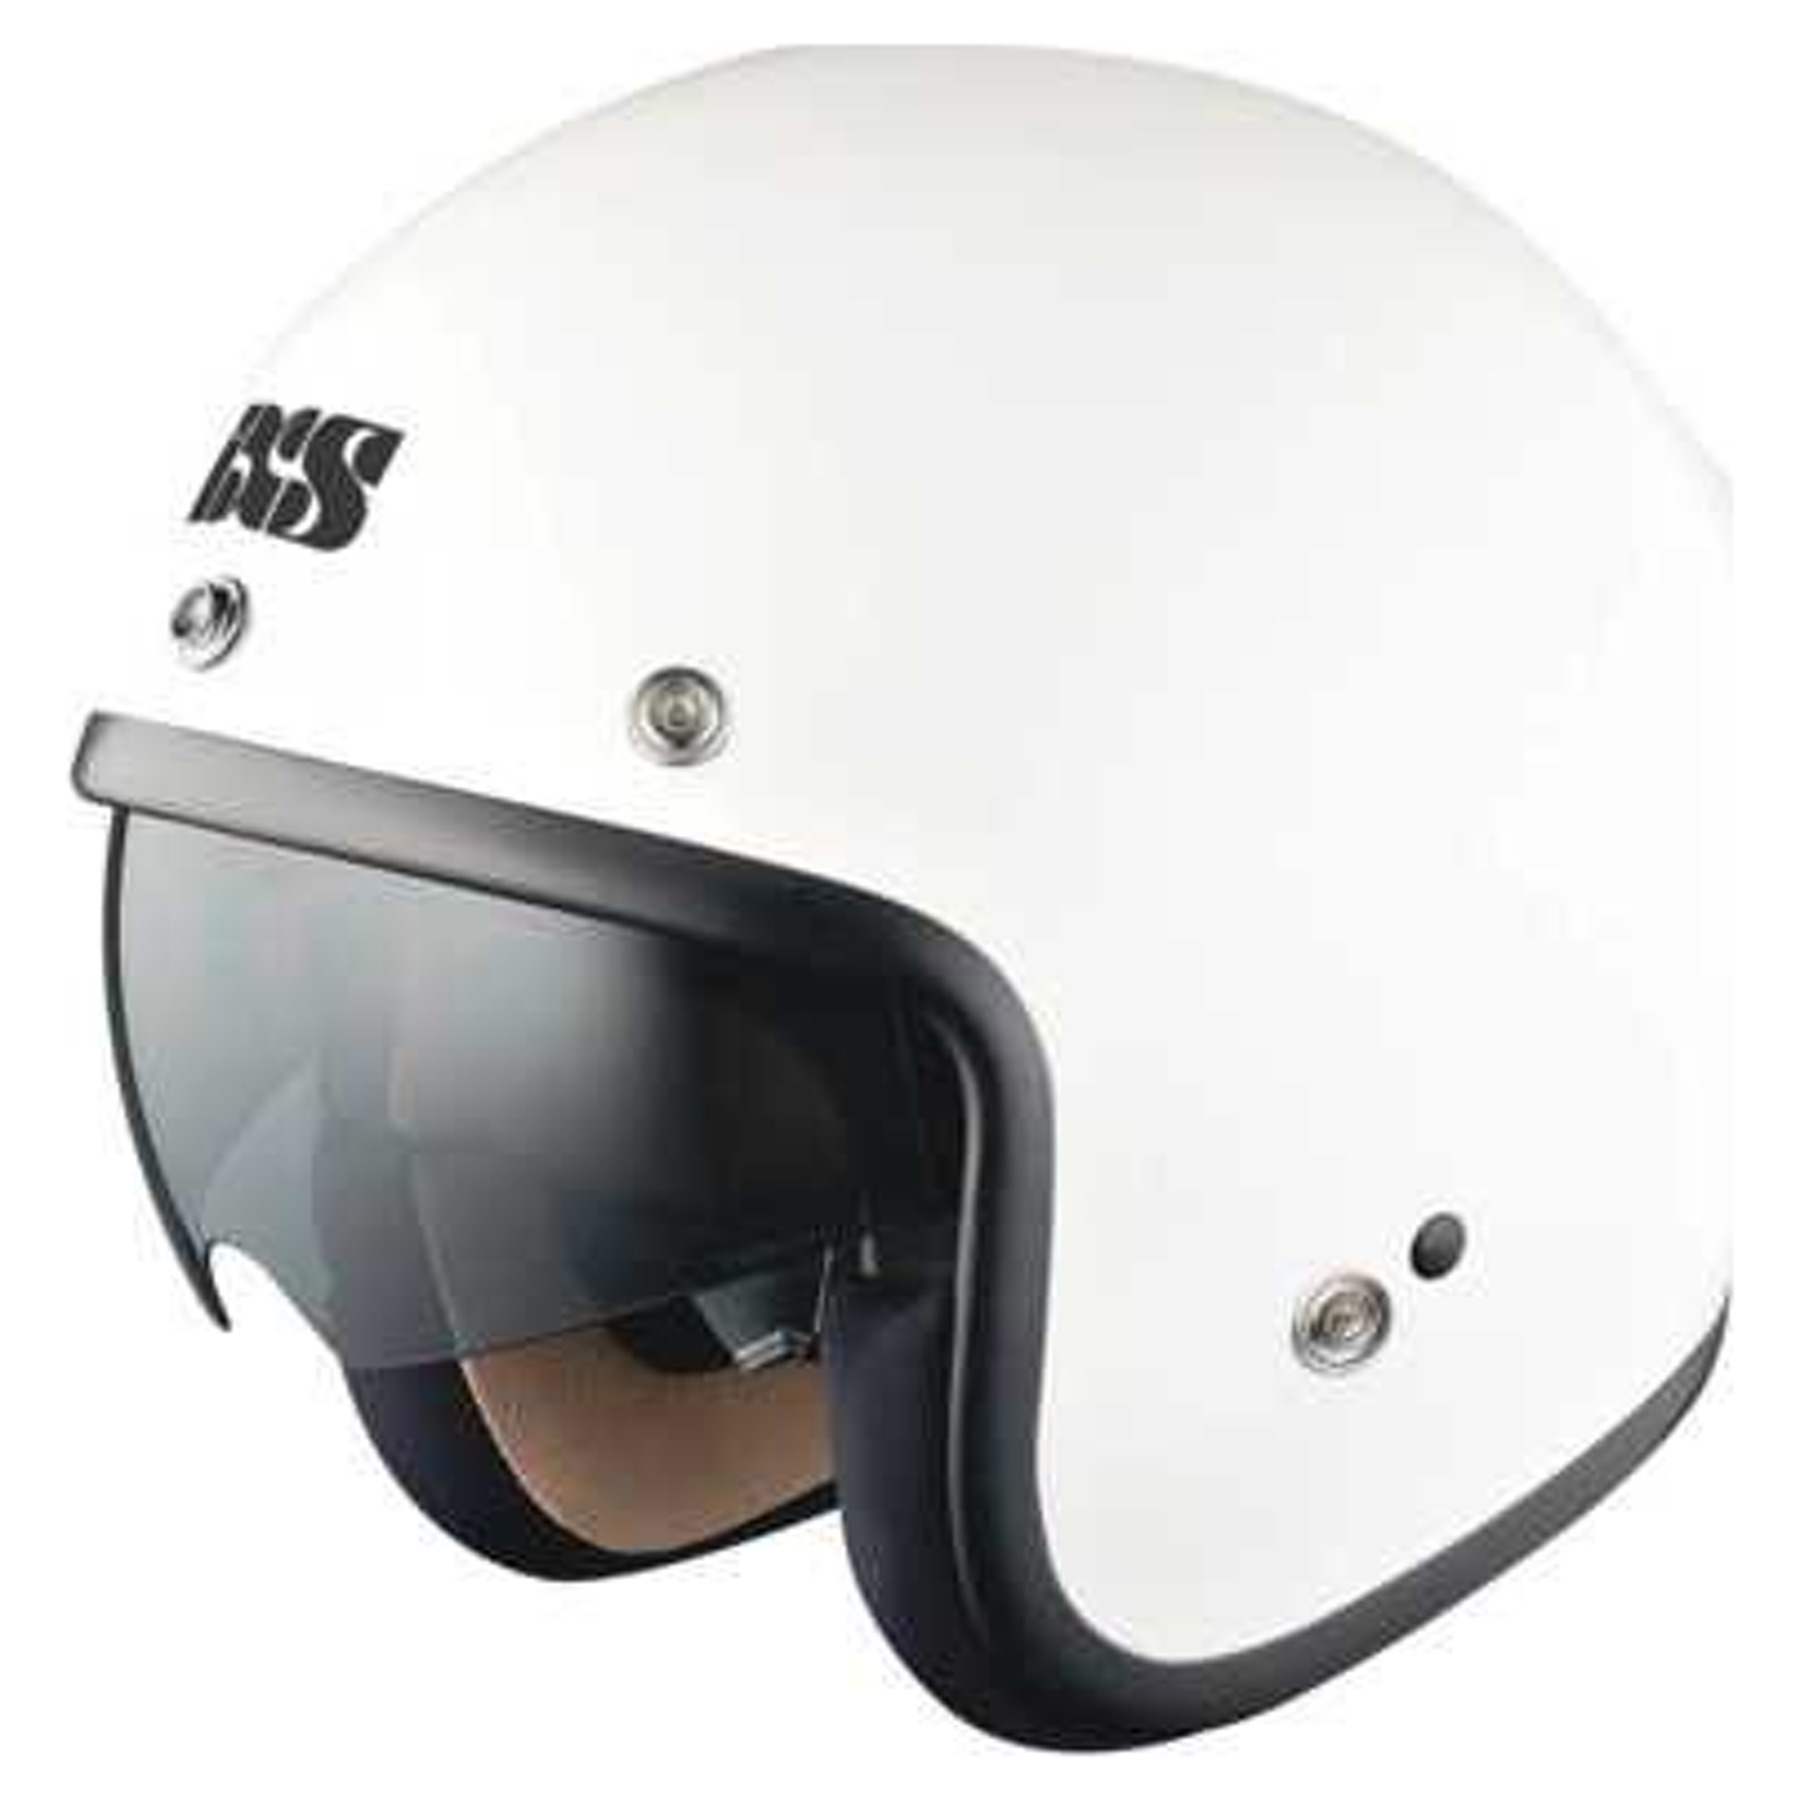 IXS Helm Hx 77, Wit - bestel voor laagste prijs, reviews en beoordelingen. Alle Jet helmen direct online bestellen via motorkledingoutlet.nl